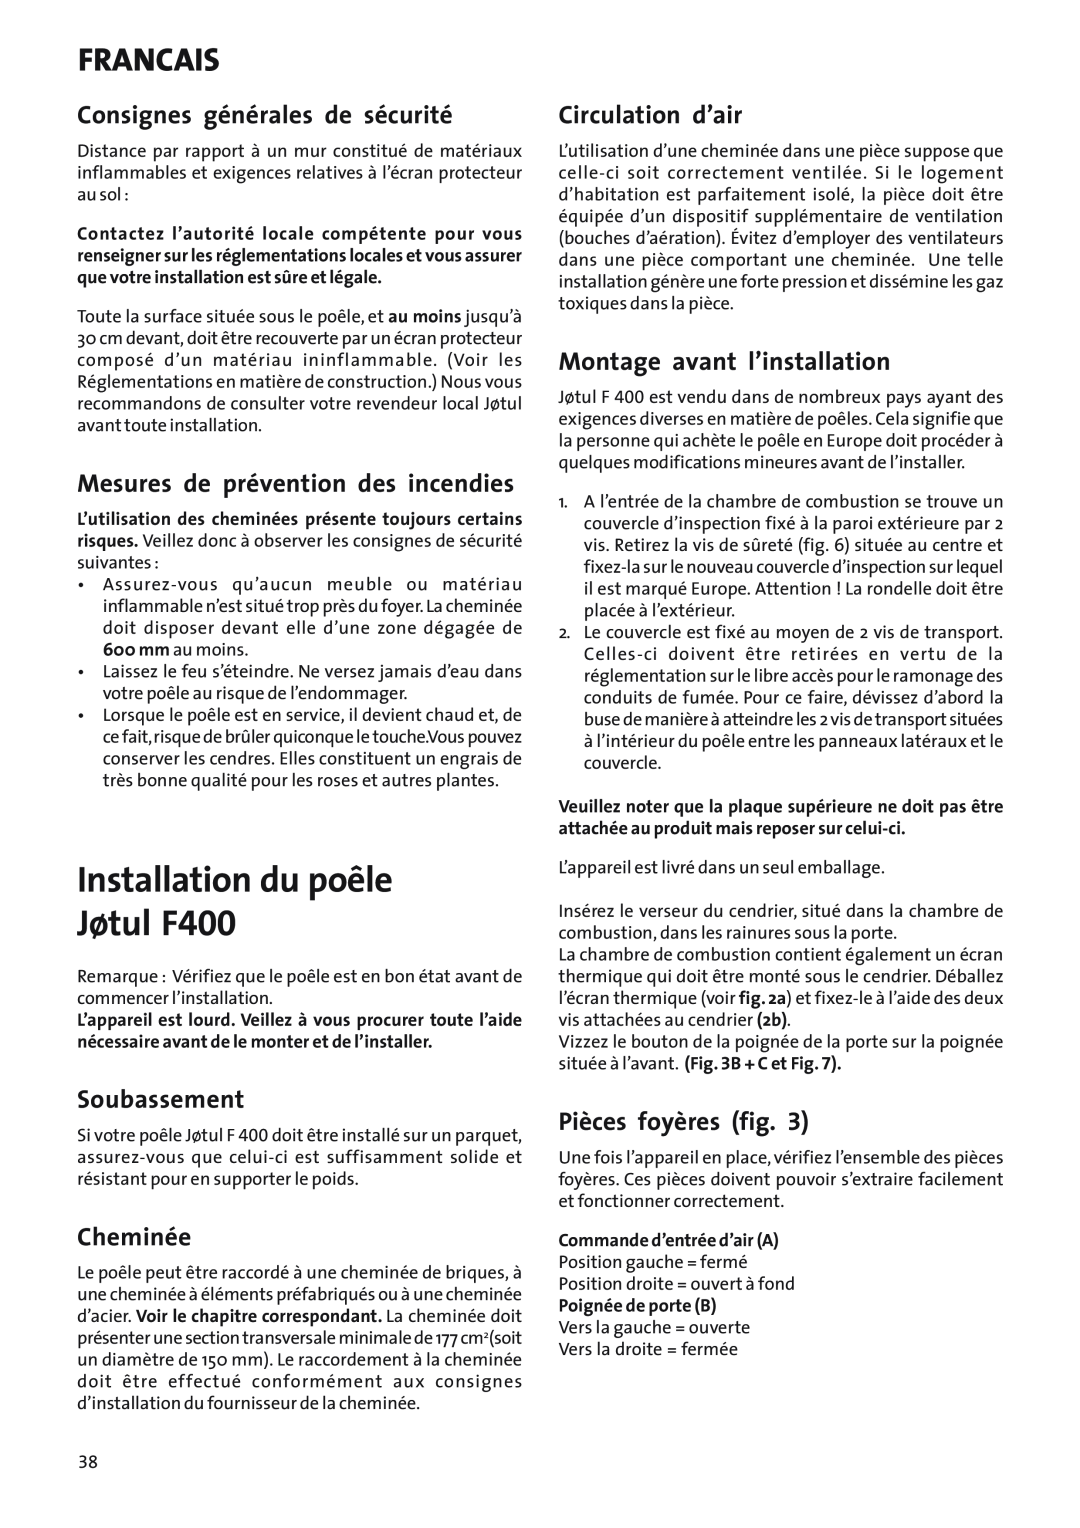 Jotul Woodstove F 400 Installation du poêle Jøtul F400, Consignes générales de sécurité, Soubassement, Cheminée, Francais 